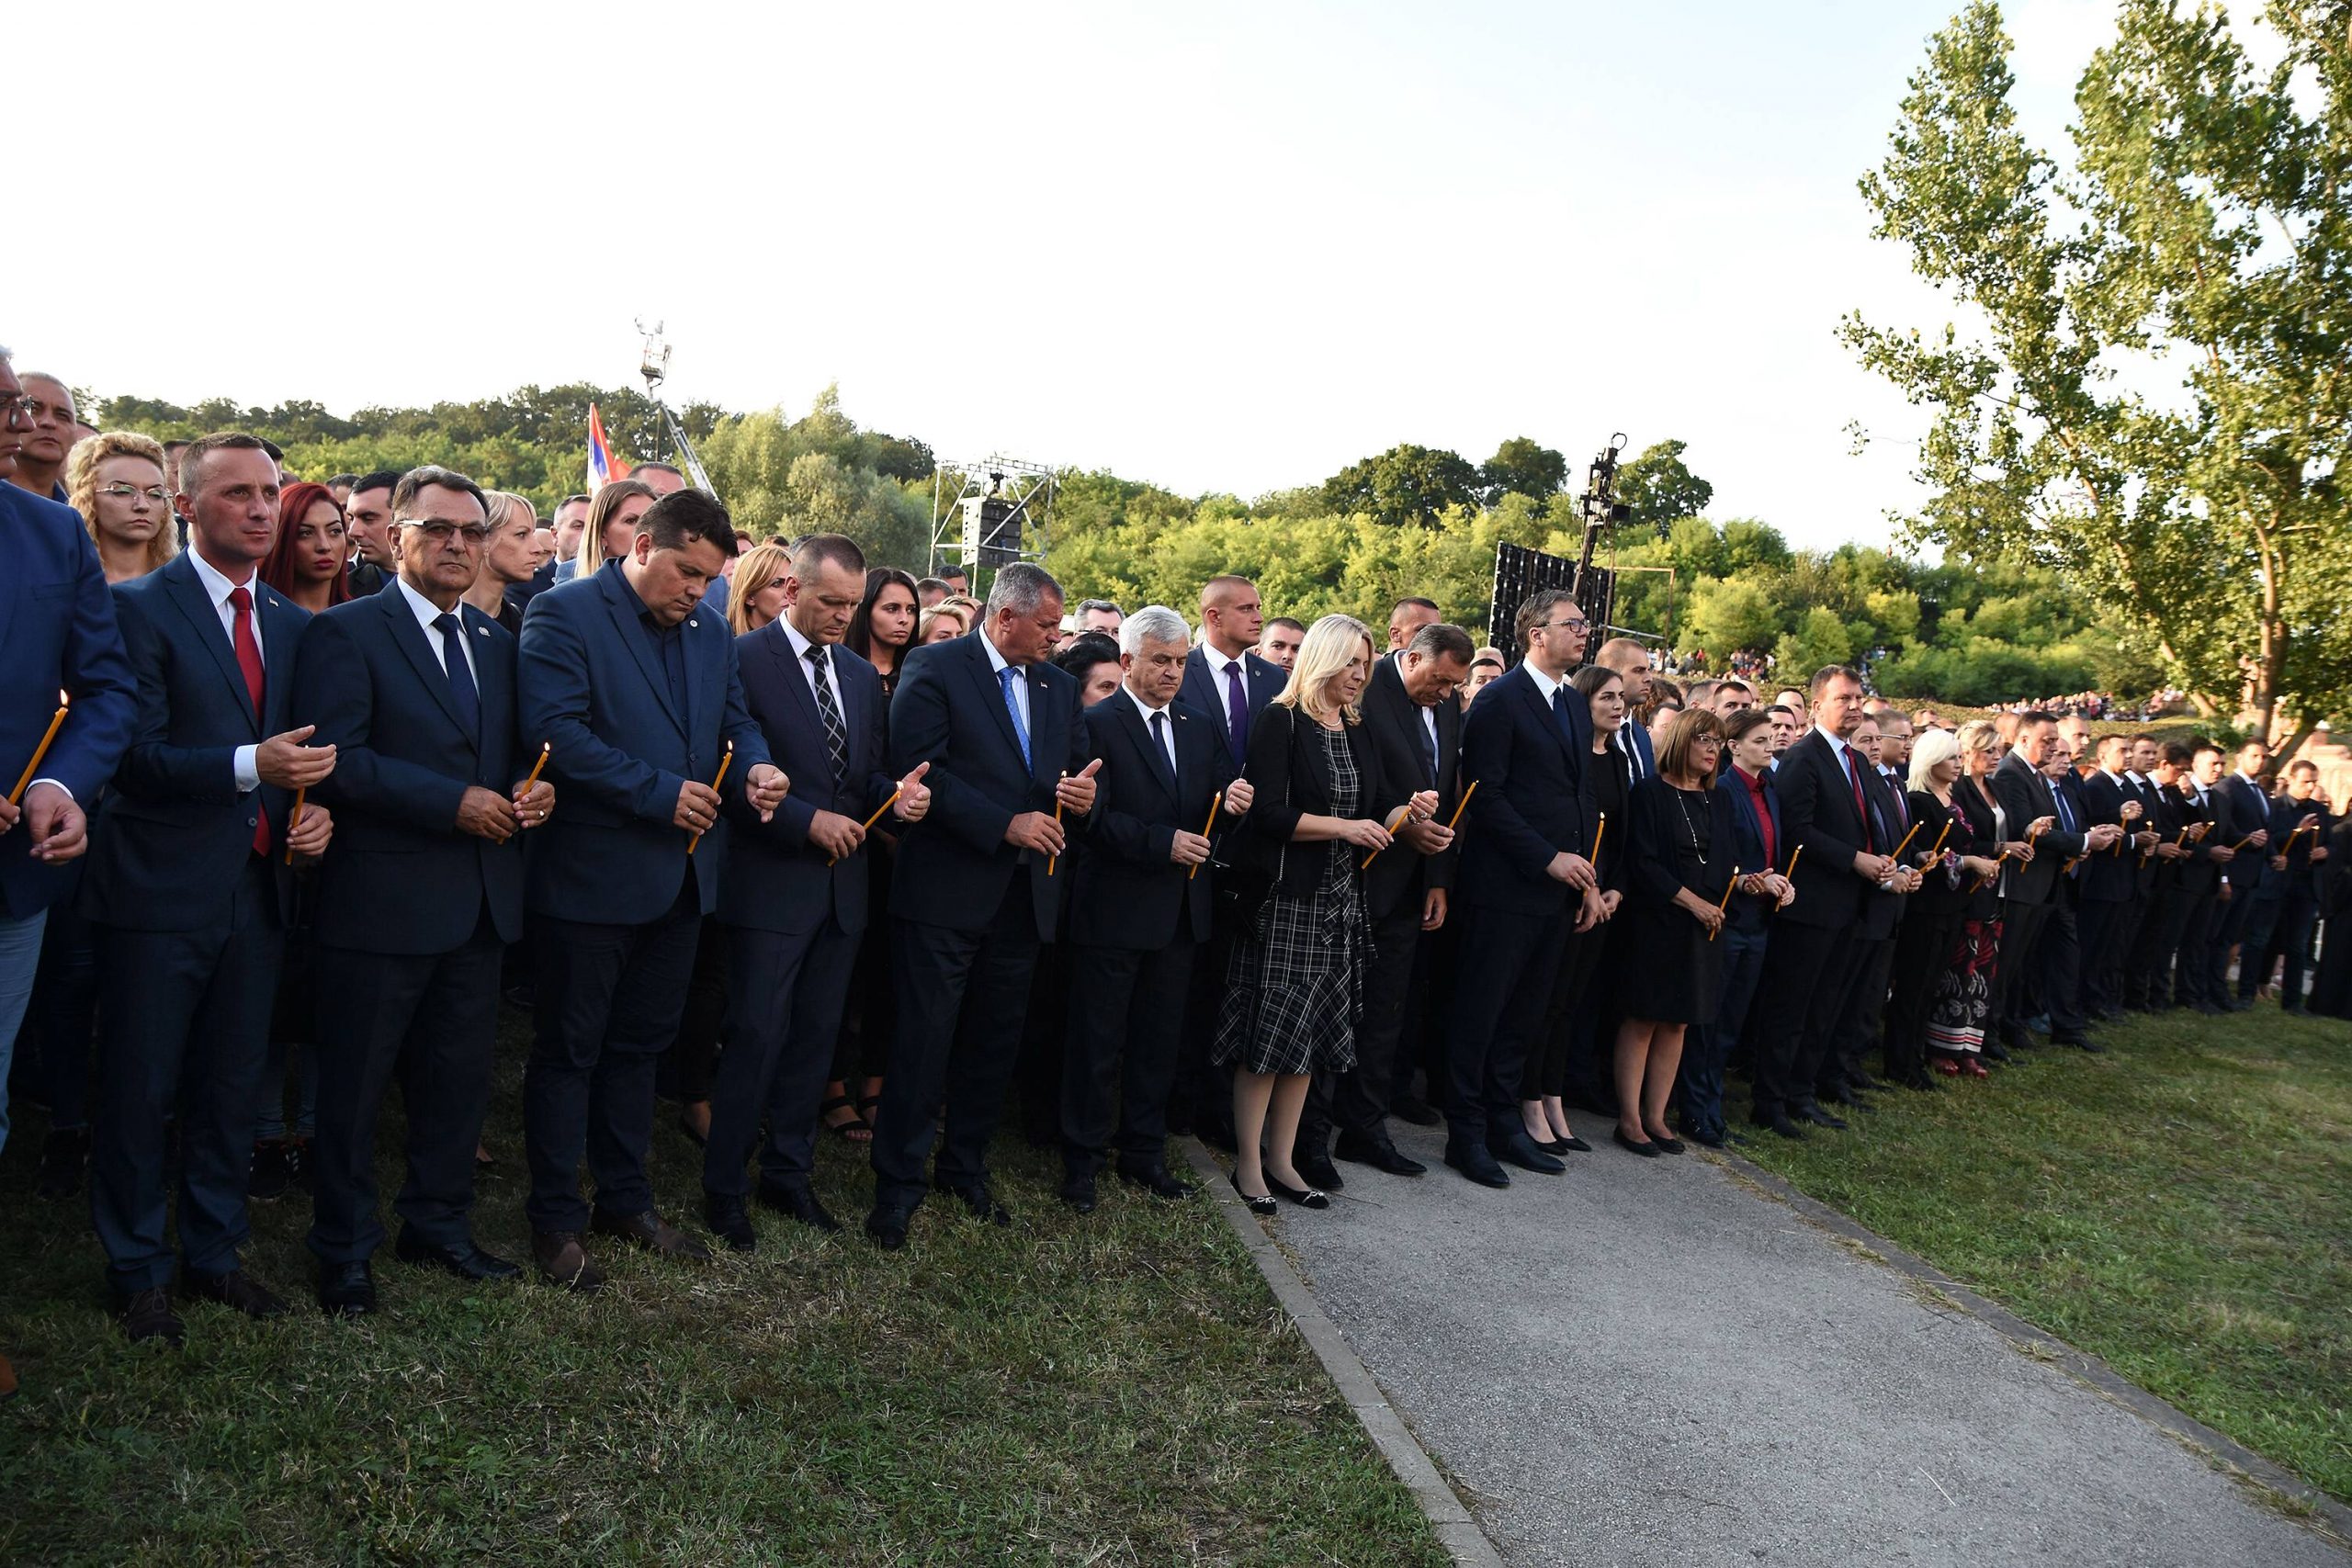 Mladi za ljudska prava Srbije i Hrvatske: Patnju žrtava ne koristiti za ratnohuškačke poruke 1